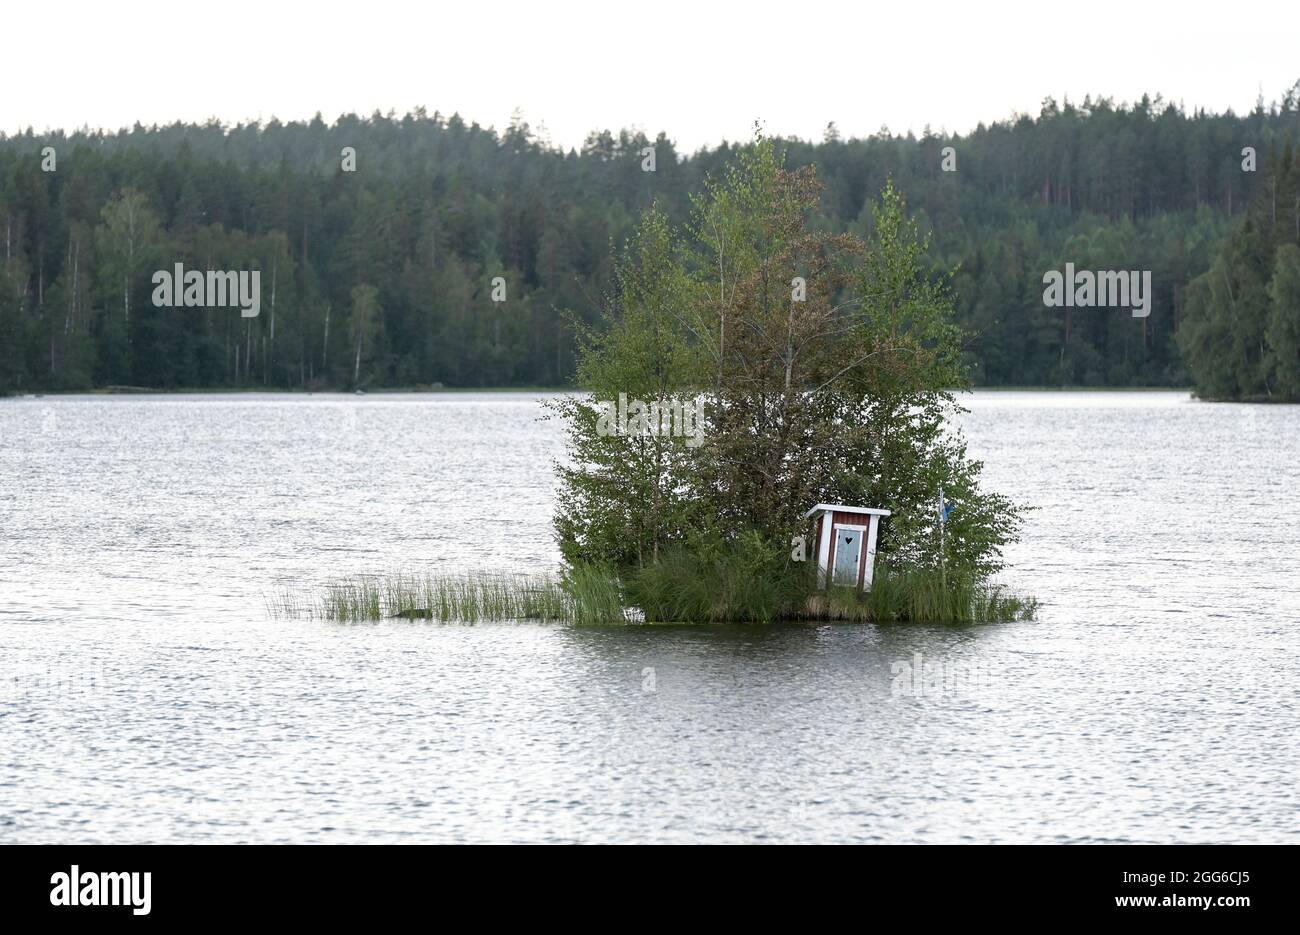 SUECIA, Falun, casa de aseo en la isla del lago / SCHWEDEN, Falun, Toilettenhäuschen auf Insel im See Foto de stock